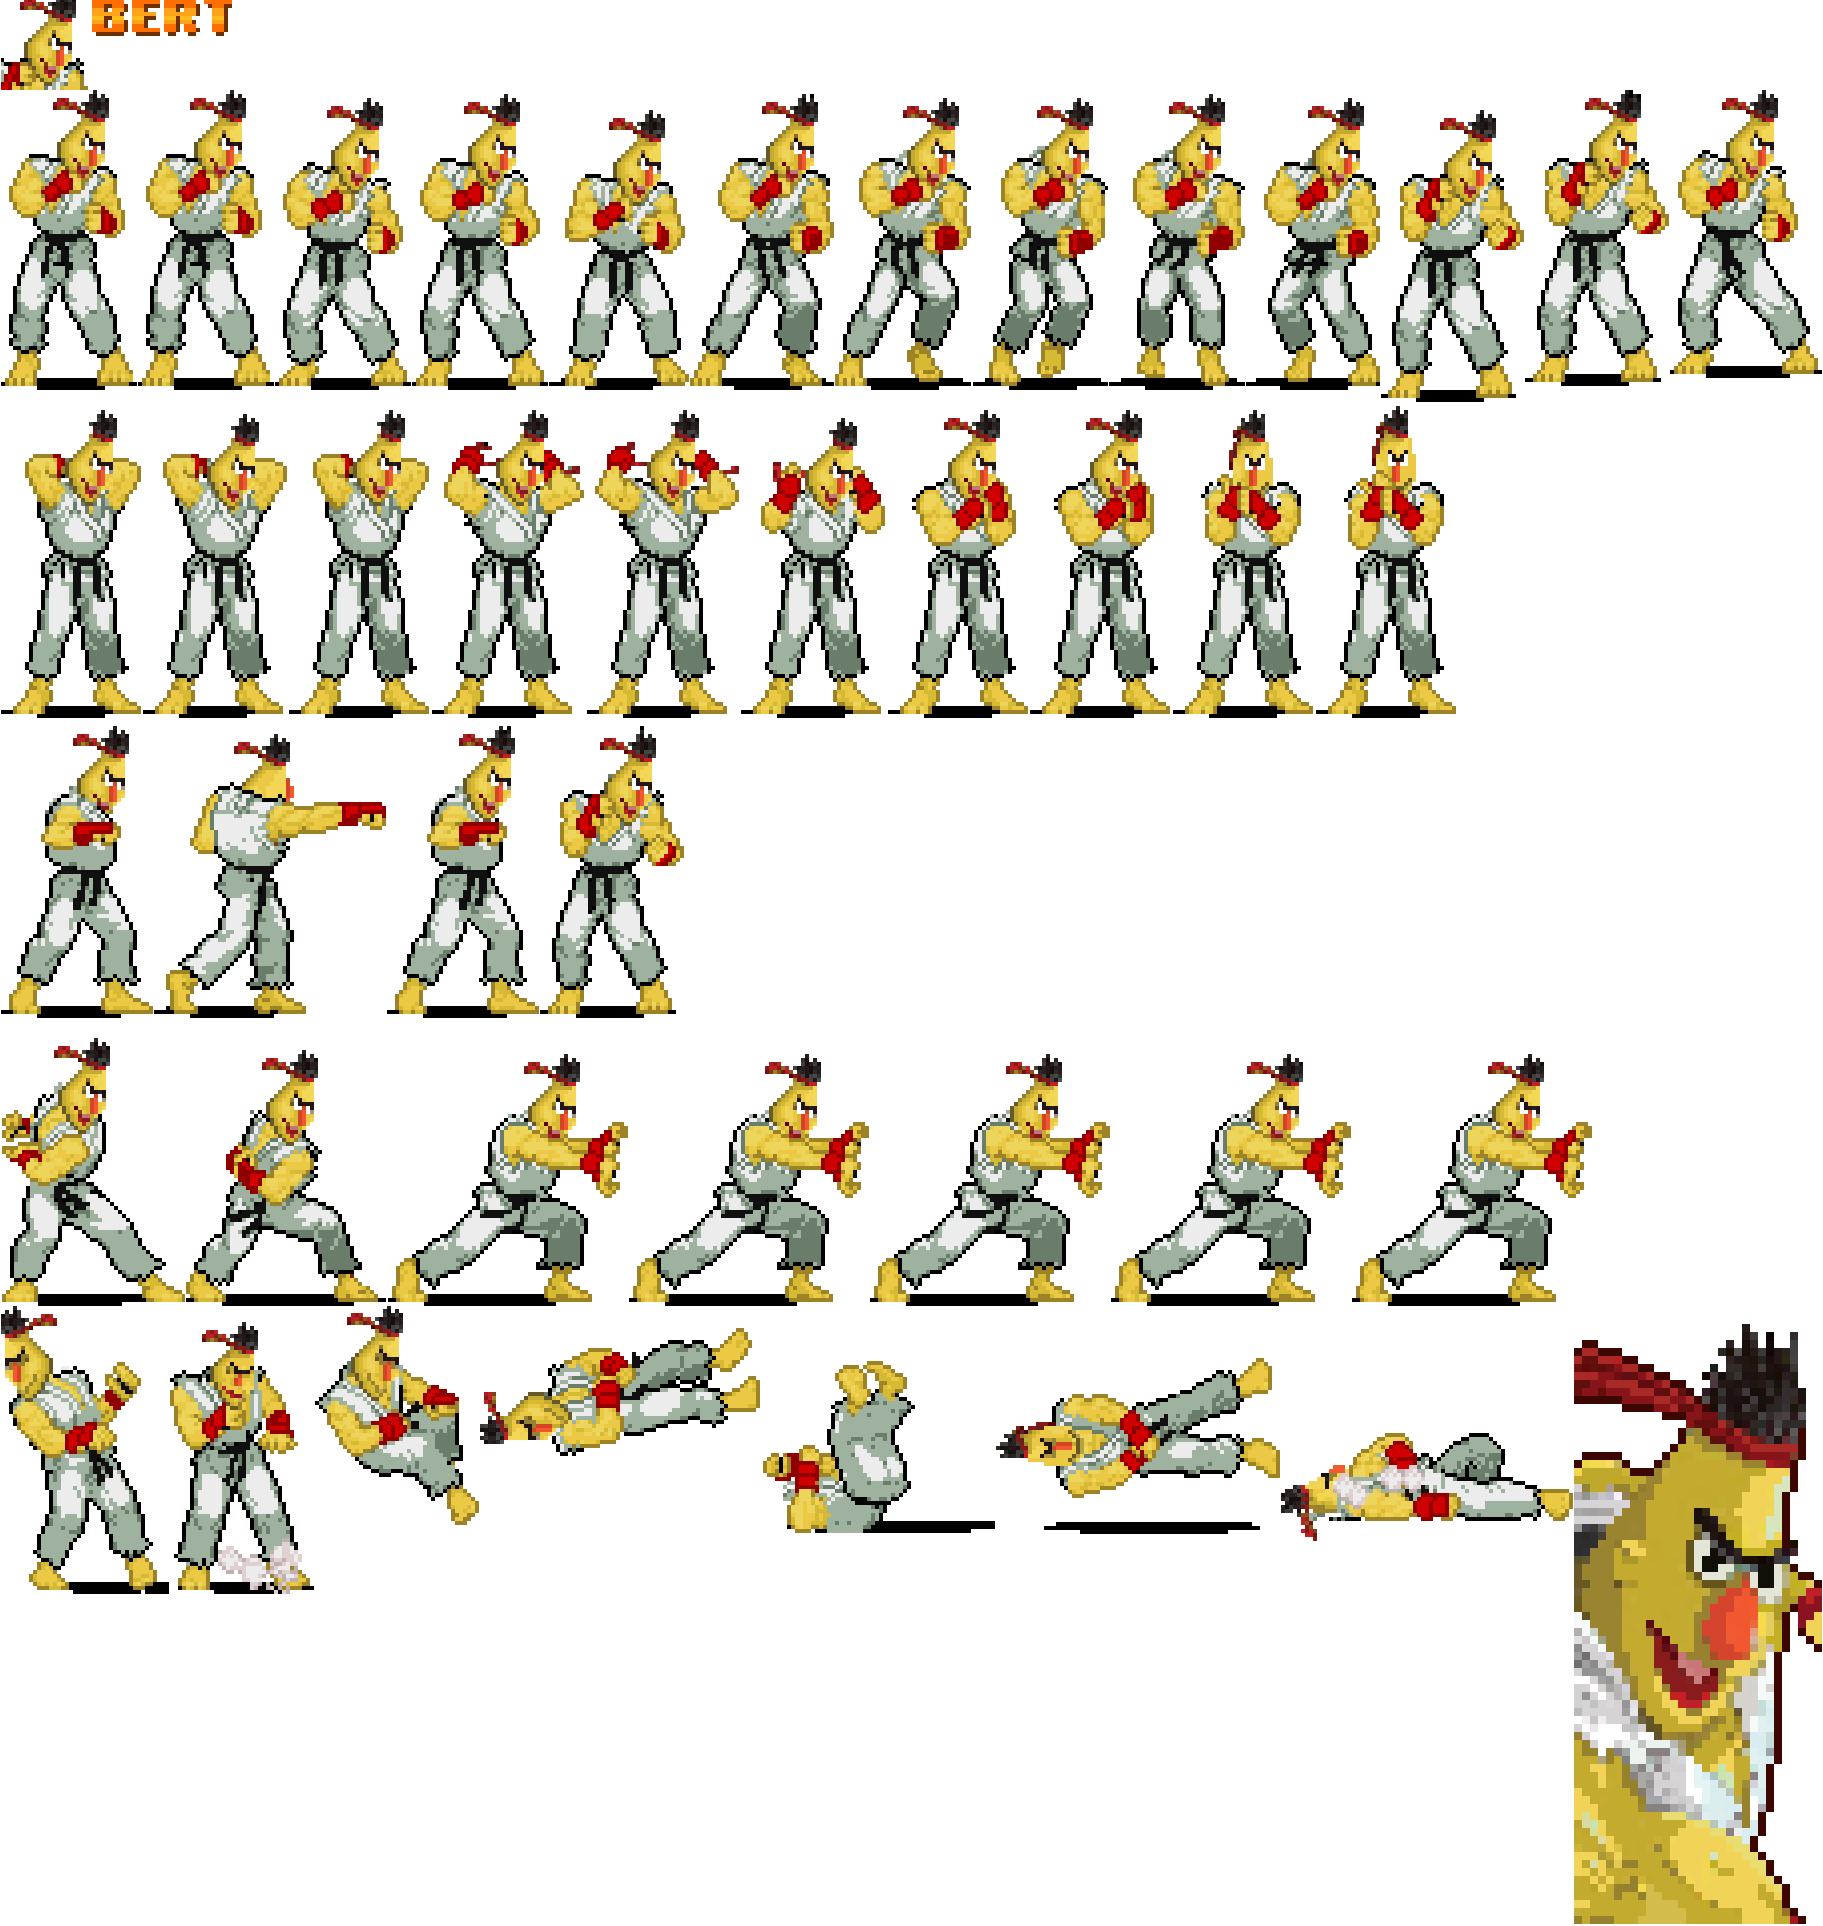 Sesame Street Fighter - Bert